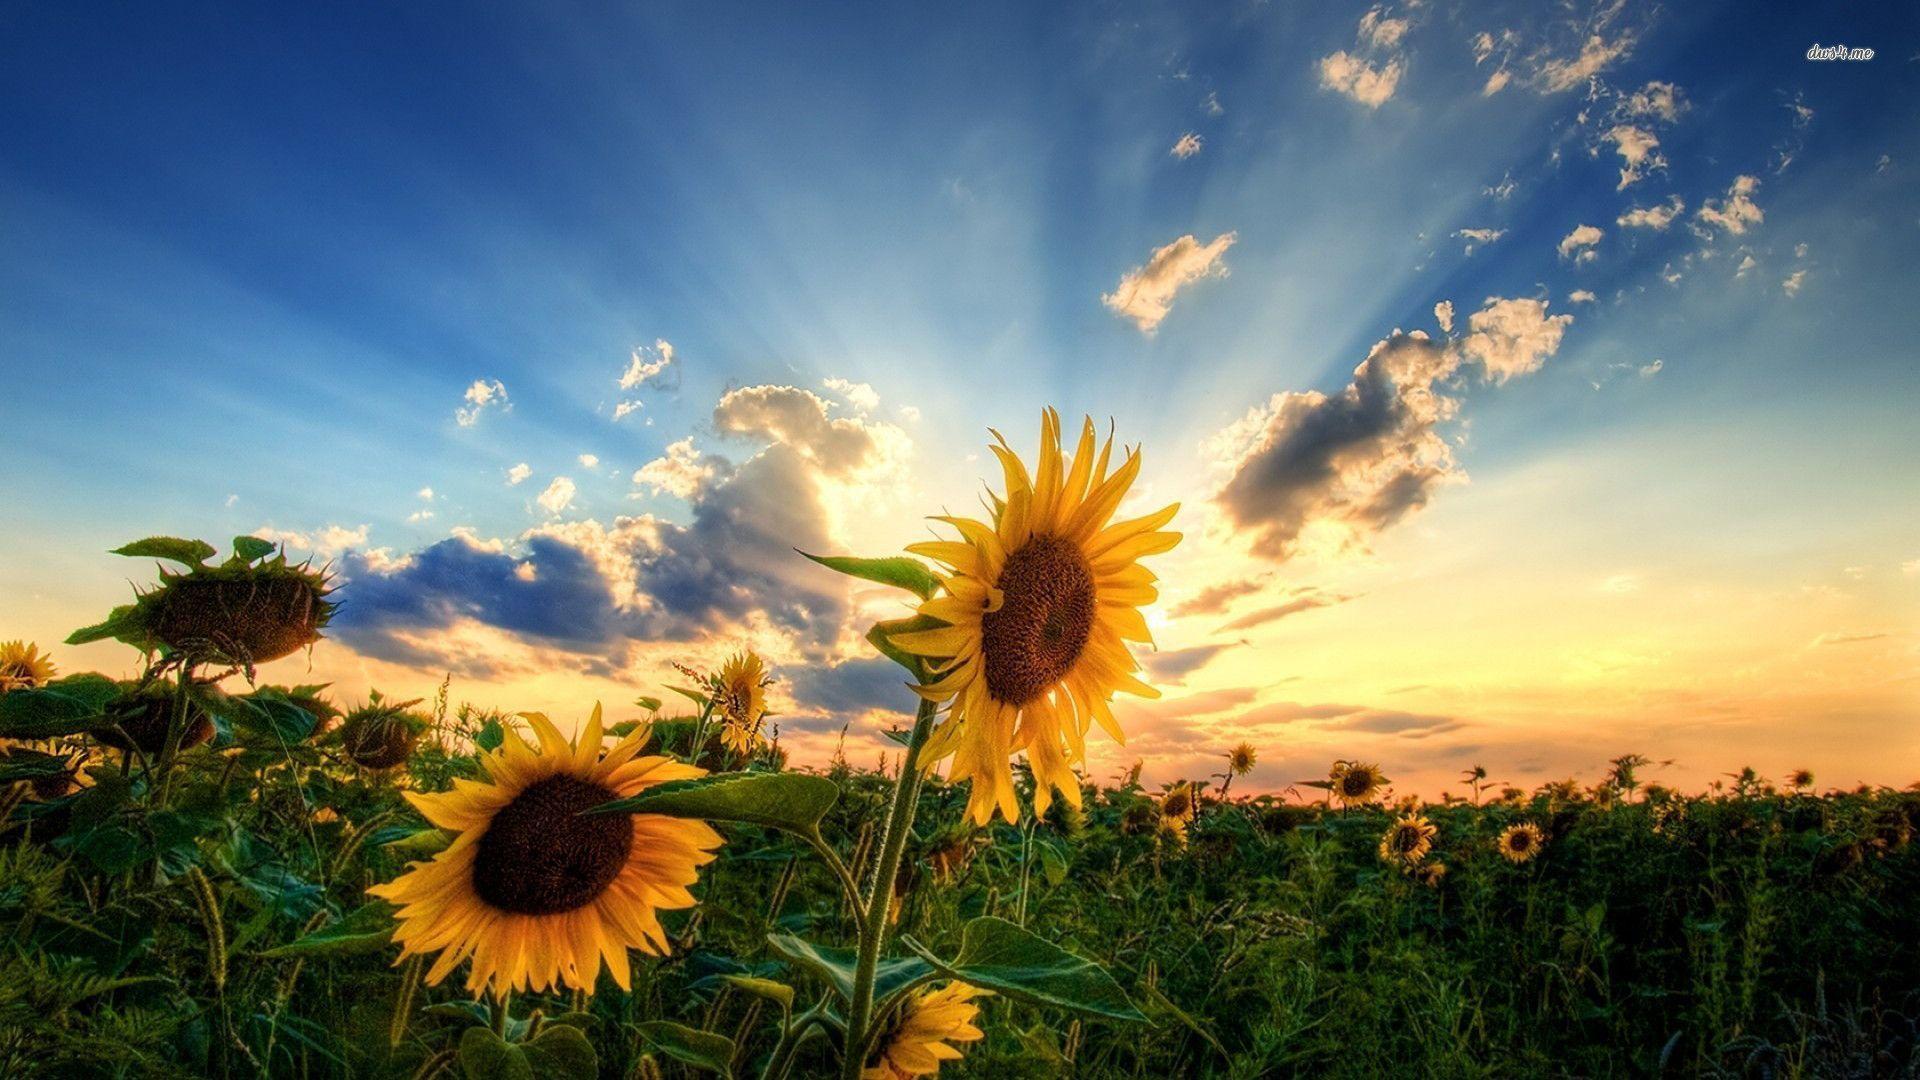 Hãy nhìn đến hoa hướng dương trên ảnh, với ánh nắng vàng rực rỡ, chúng ta cảm nhận được sự sống động và an yên tinh tại. Mỗi cánh hoa đều mang một ý nghĩa đặc biệt, đó là niềm tin và hy vọng.